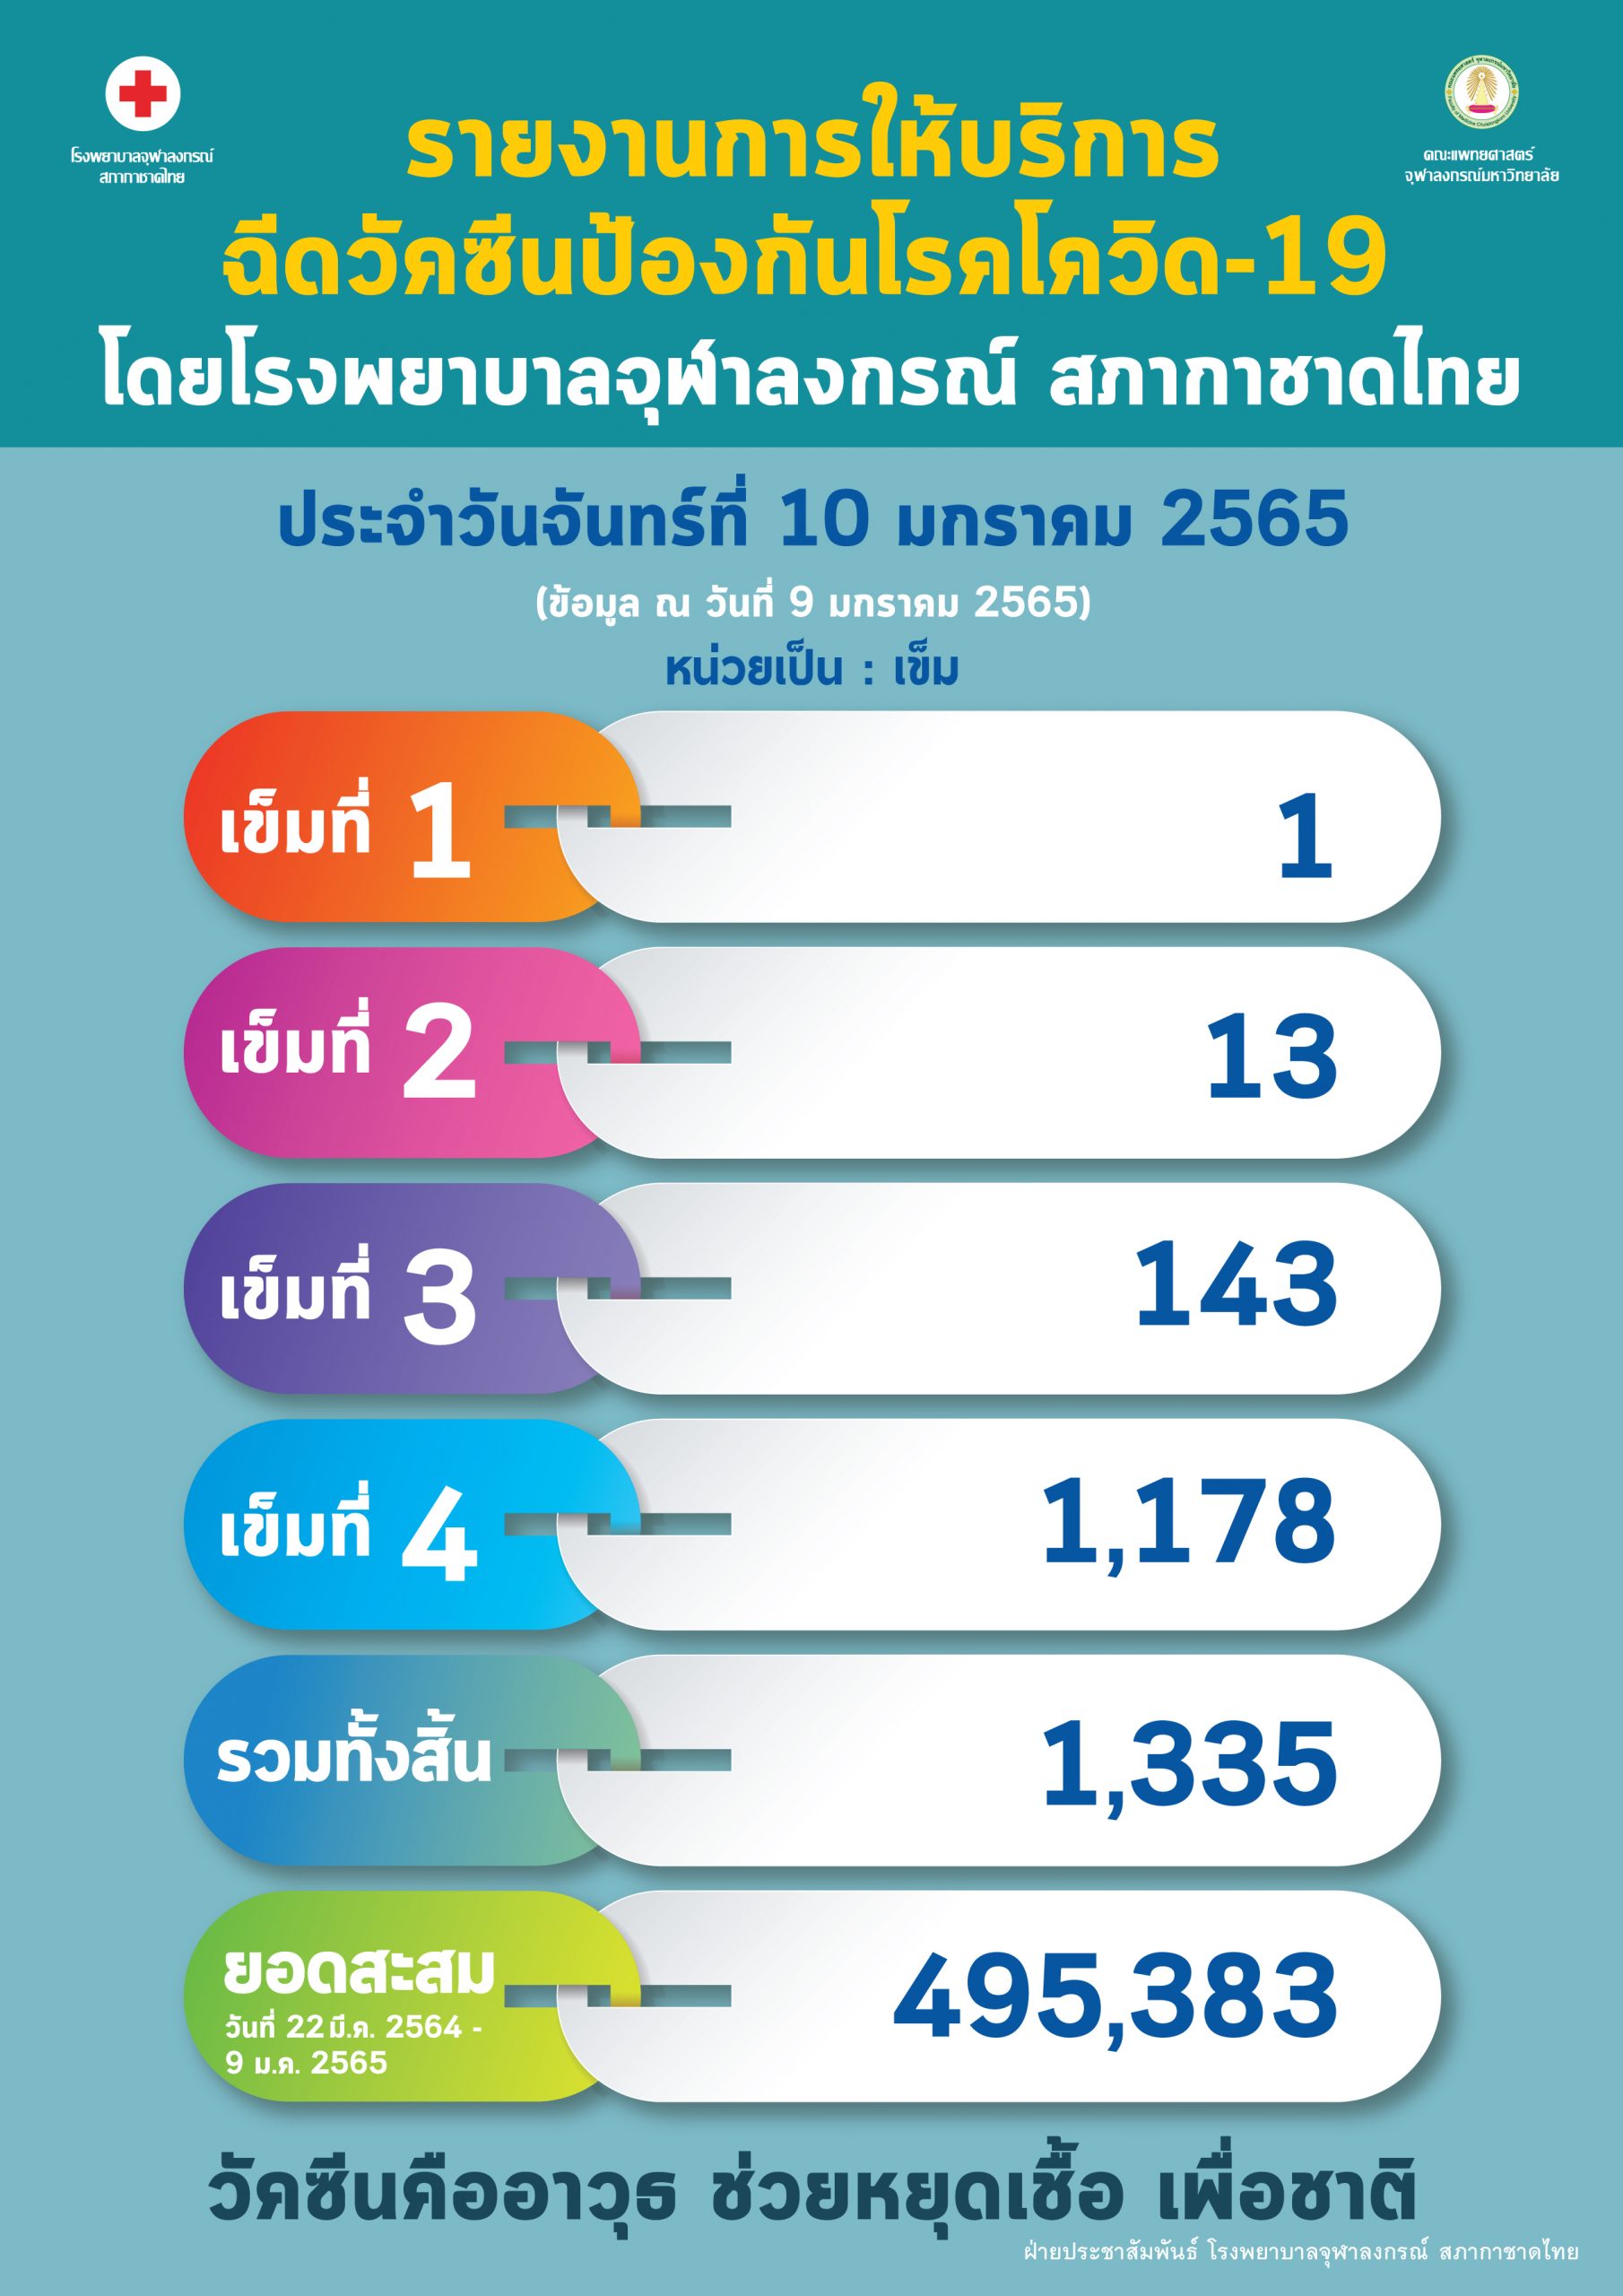 รายงานการให้บริการฉีดวัคซีนป้องกันโรคโควิด-19 โดยโรงพยาบาลจุฬาลงกรณ์ สภากาชาดไทย ประจำวันจันทร์ที่ 10 มกราคม 2565